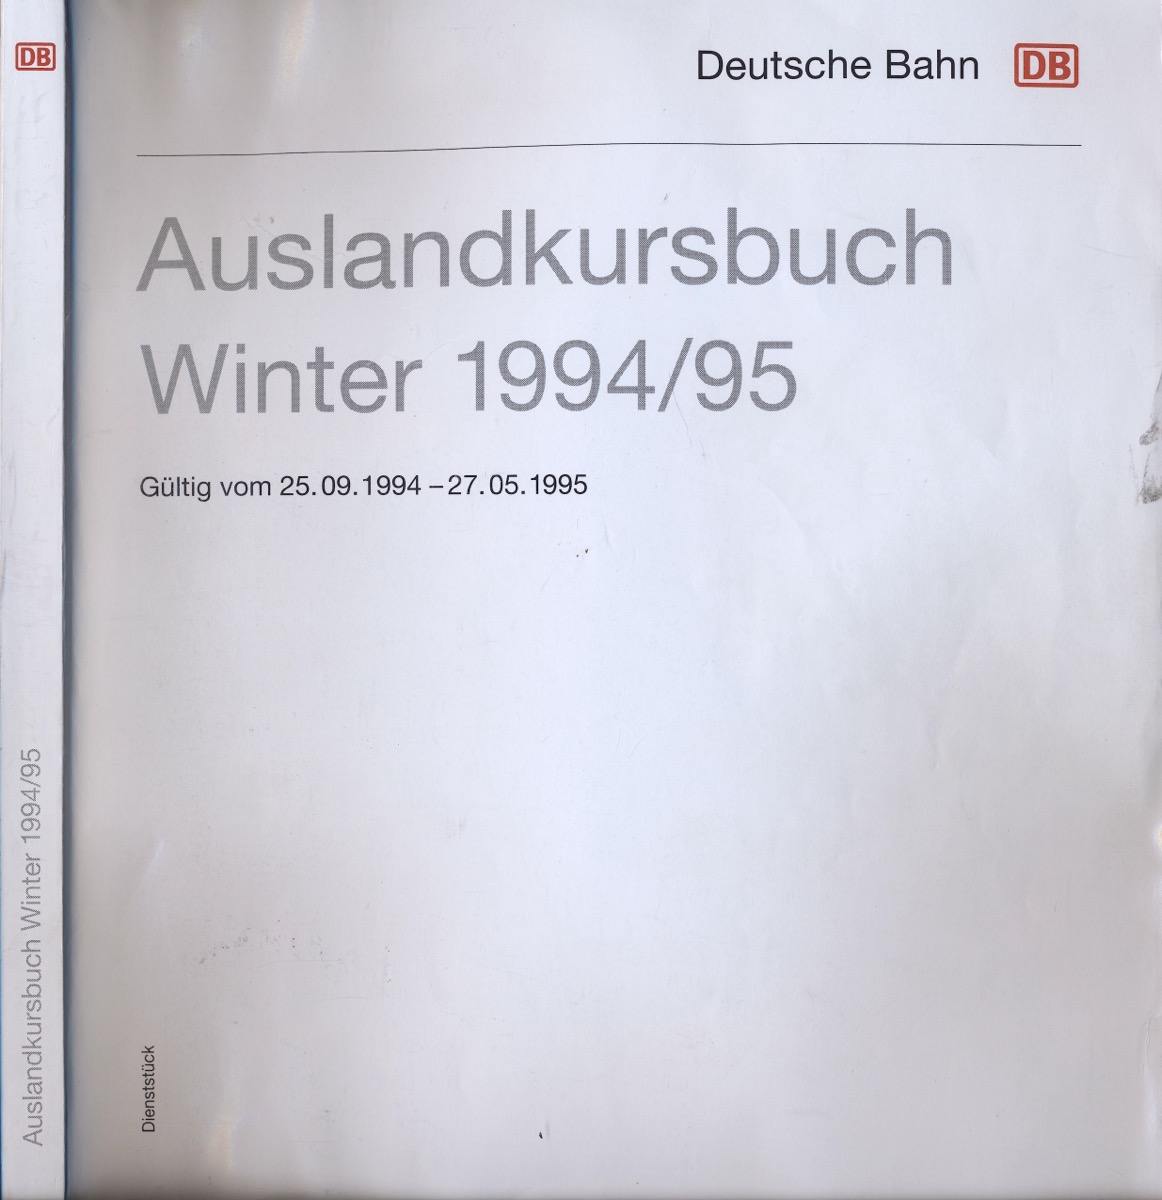   Deutsche Bahn (DB): Auslandskursbuch Winter 1994/95, gültig vom 25.09.1994 bis 27.05.1995. 